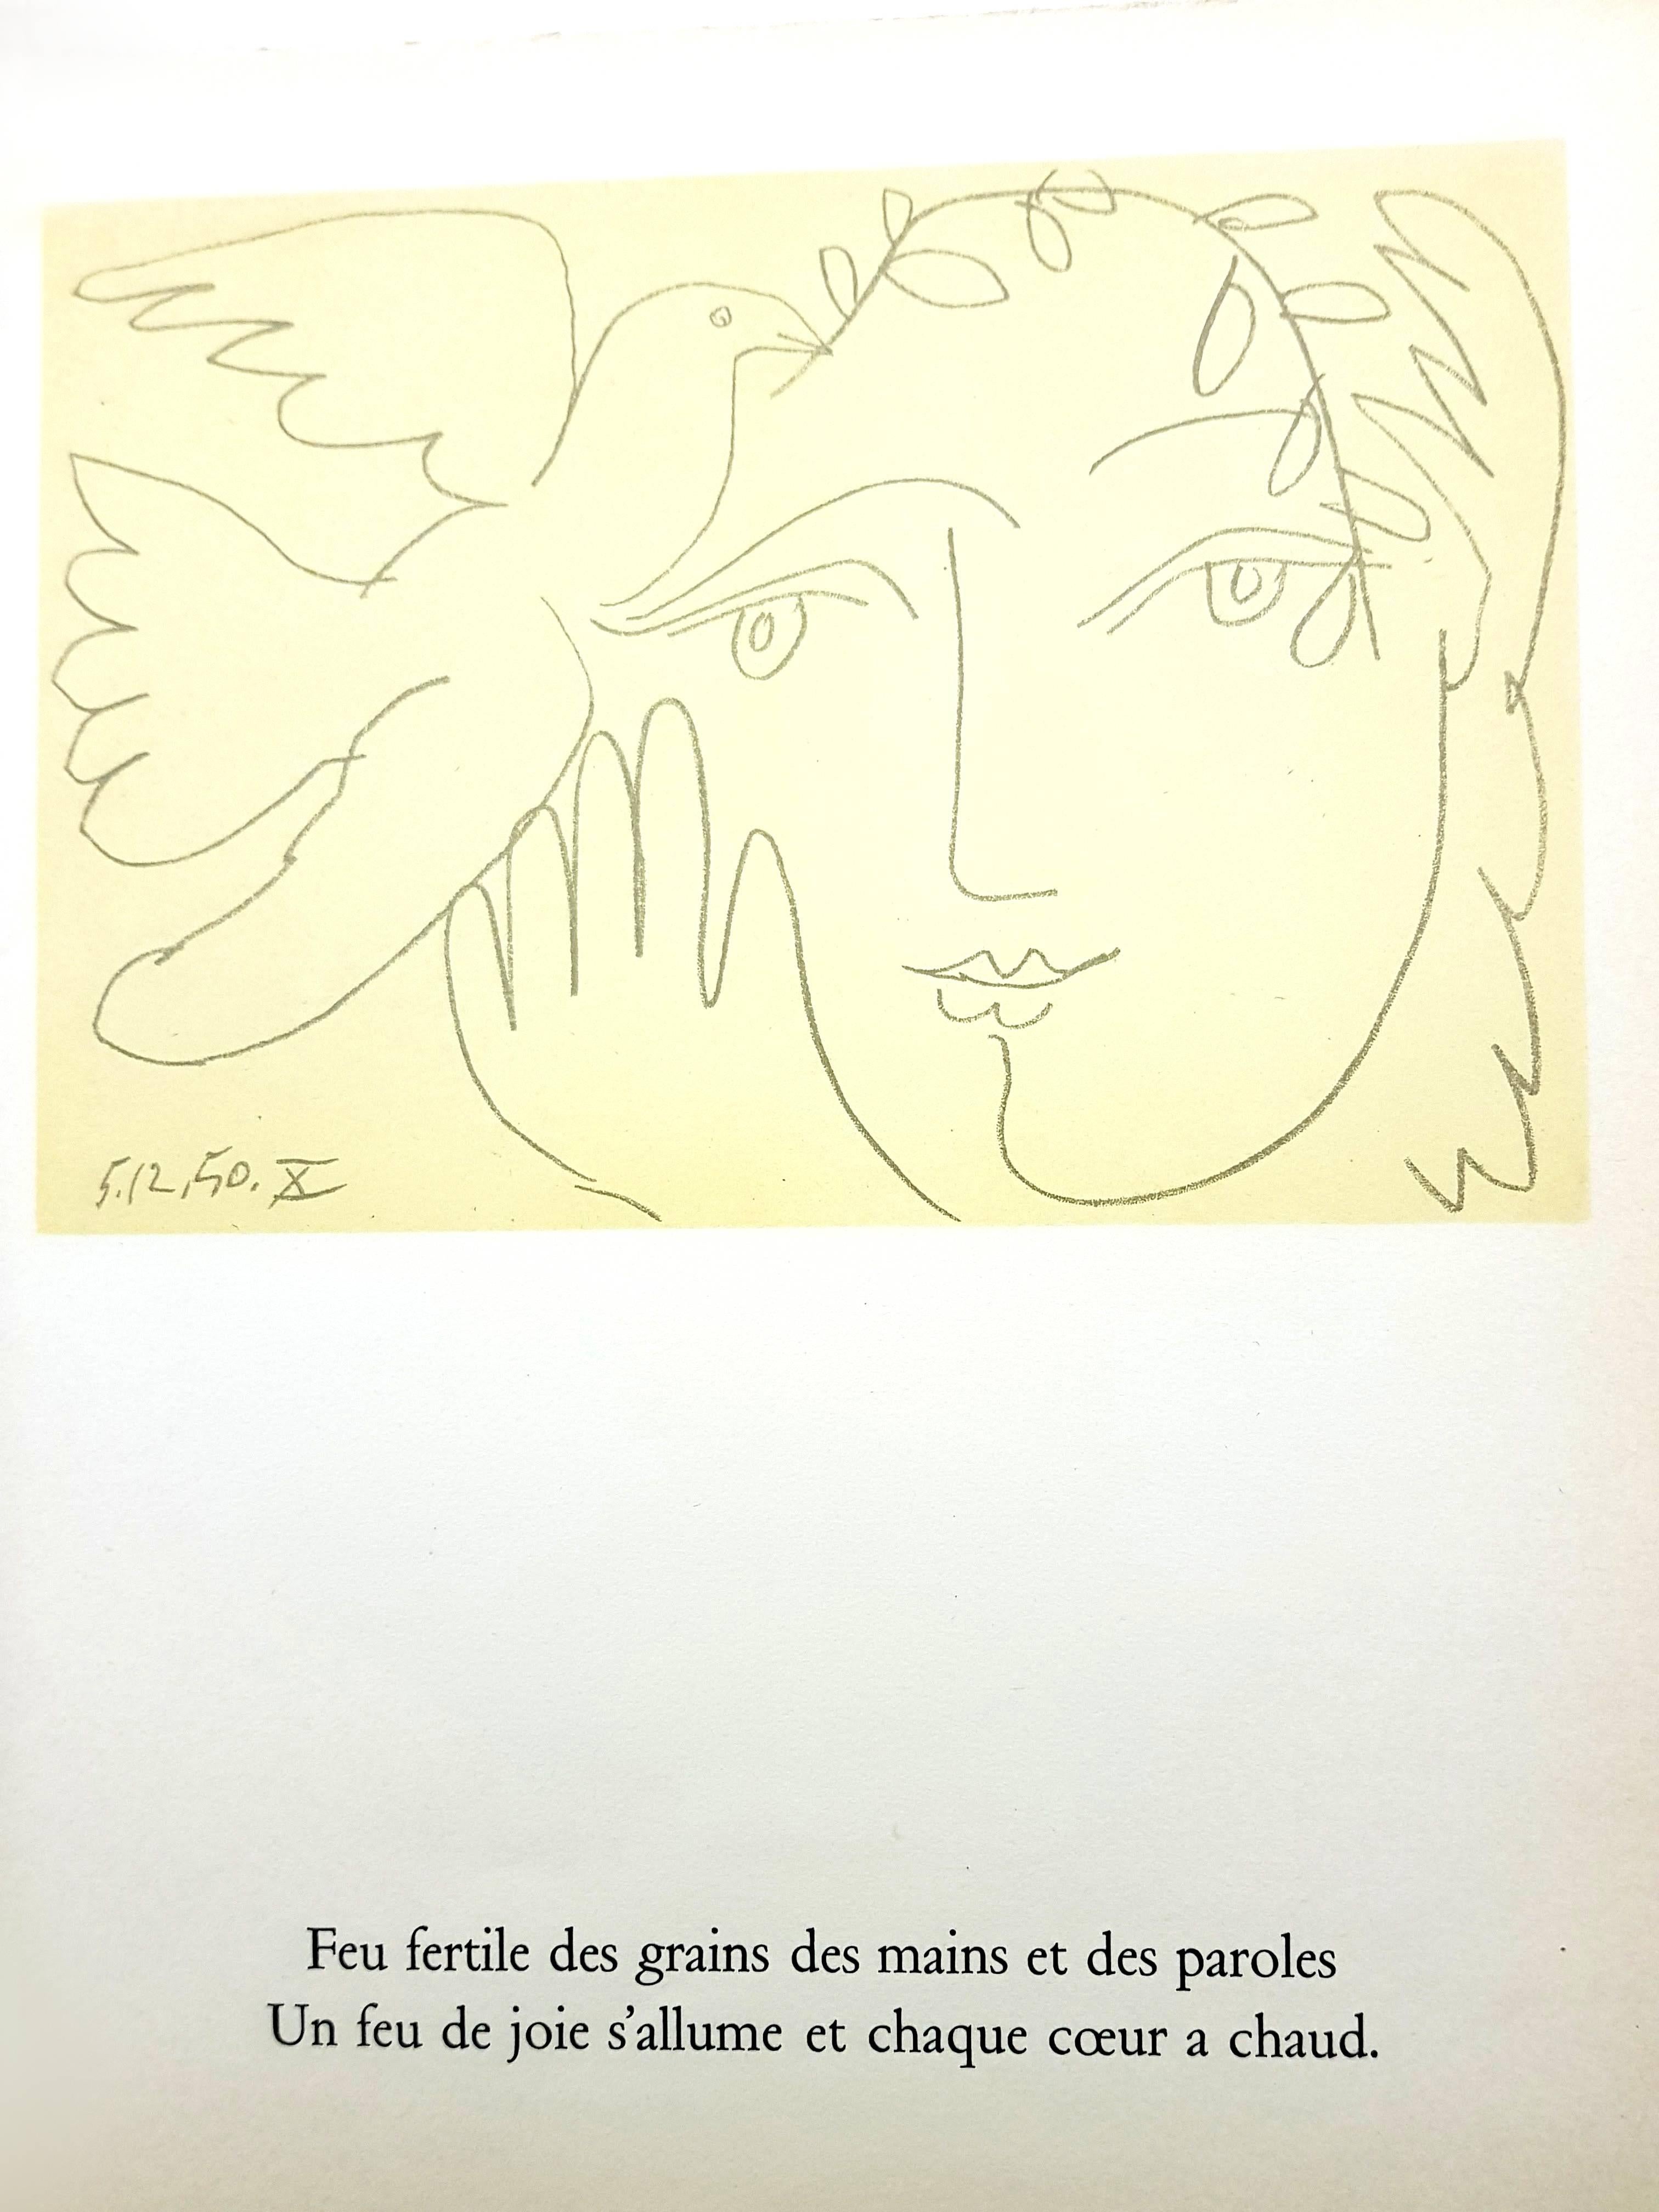 Künstler: Pablo Picasso (nach)
Medium: Lithographie
Portfolio: Visage de la Paix
Jahr: 1951
Auflage: 2050
Blattgröße: 29,5 x 22,5 cm
Es wurde unter der direkten Aufsicht von Pablo Picasso und mit seiner Zustimmung hergestellt